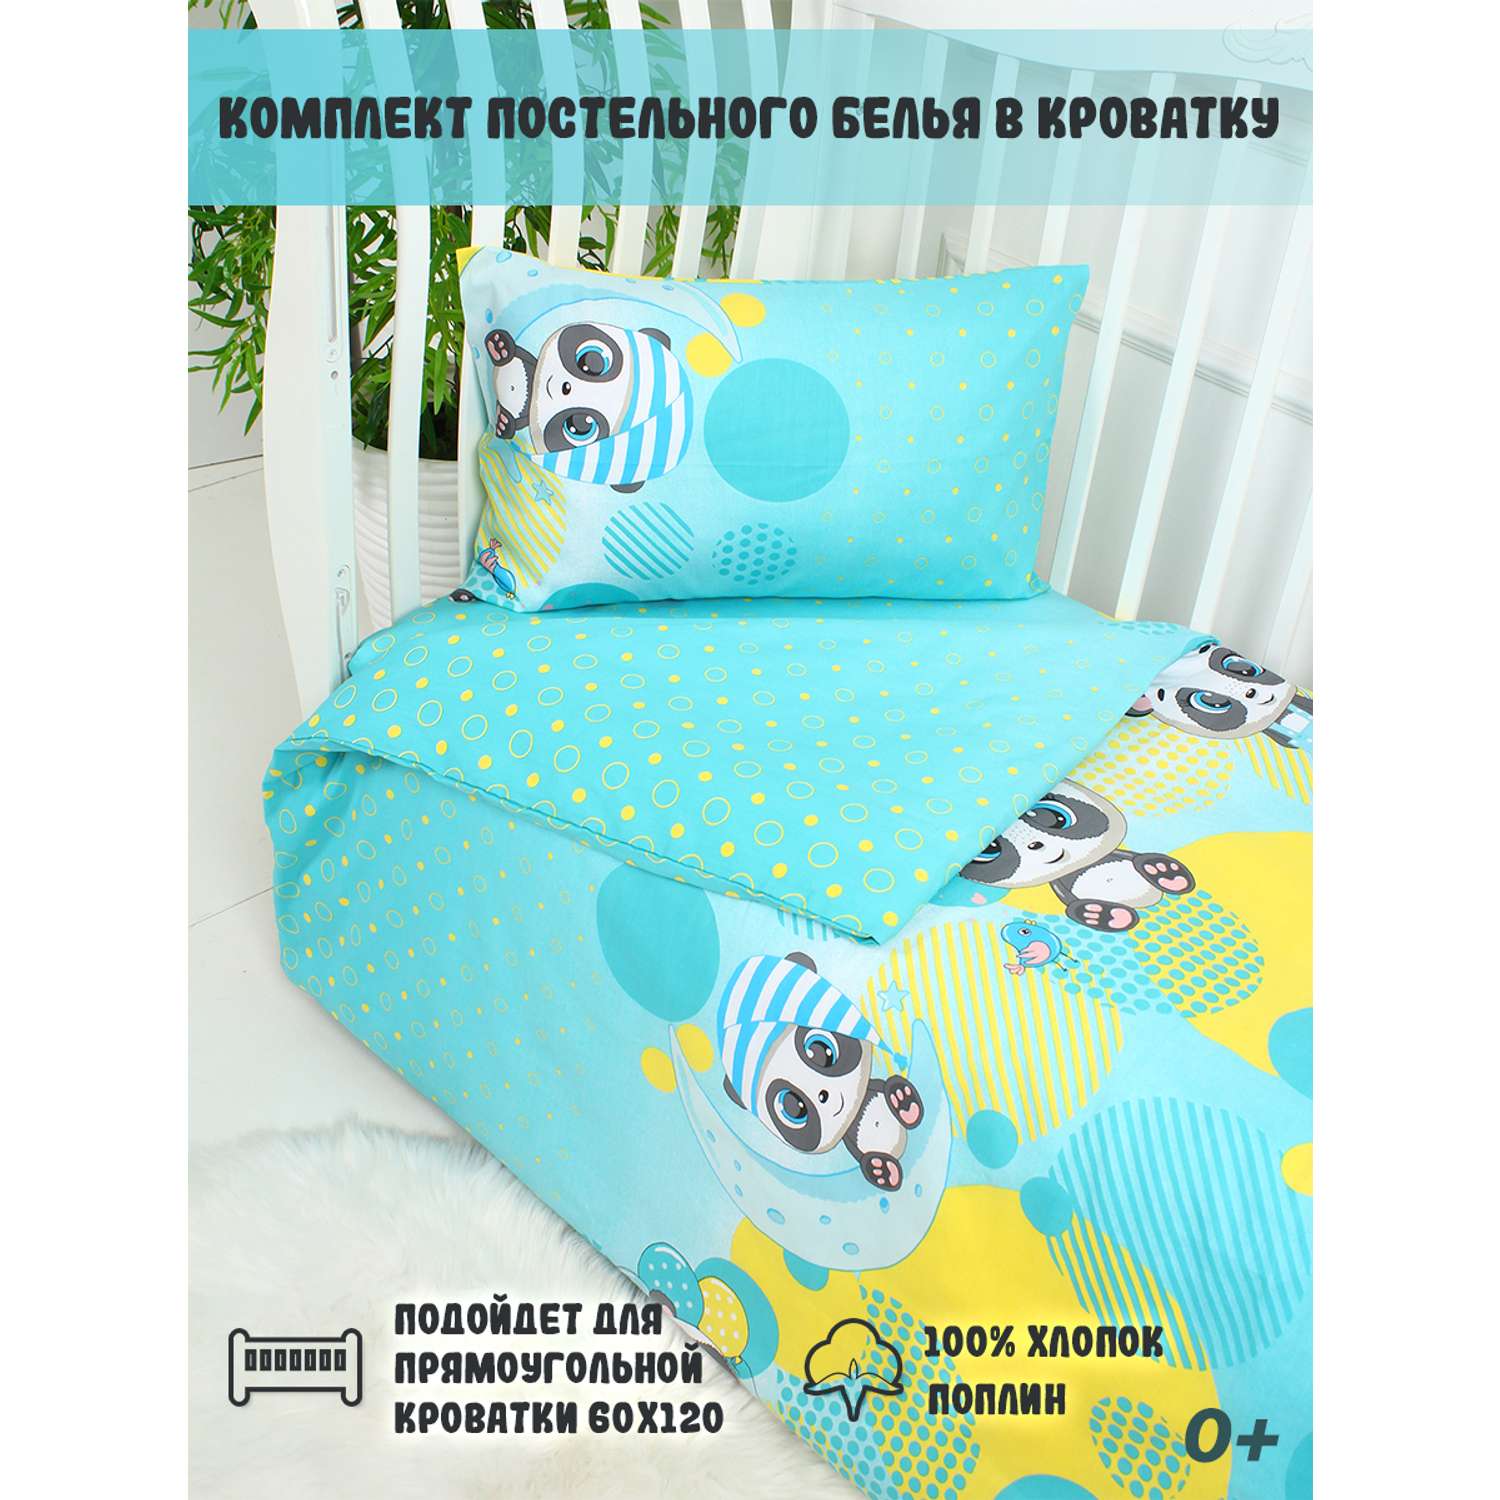 Комплект постельного белья ТК Русский Дом в кроватку 865-1 - фото 2